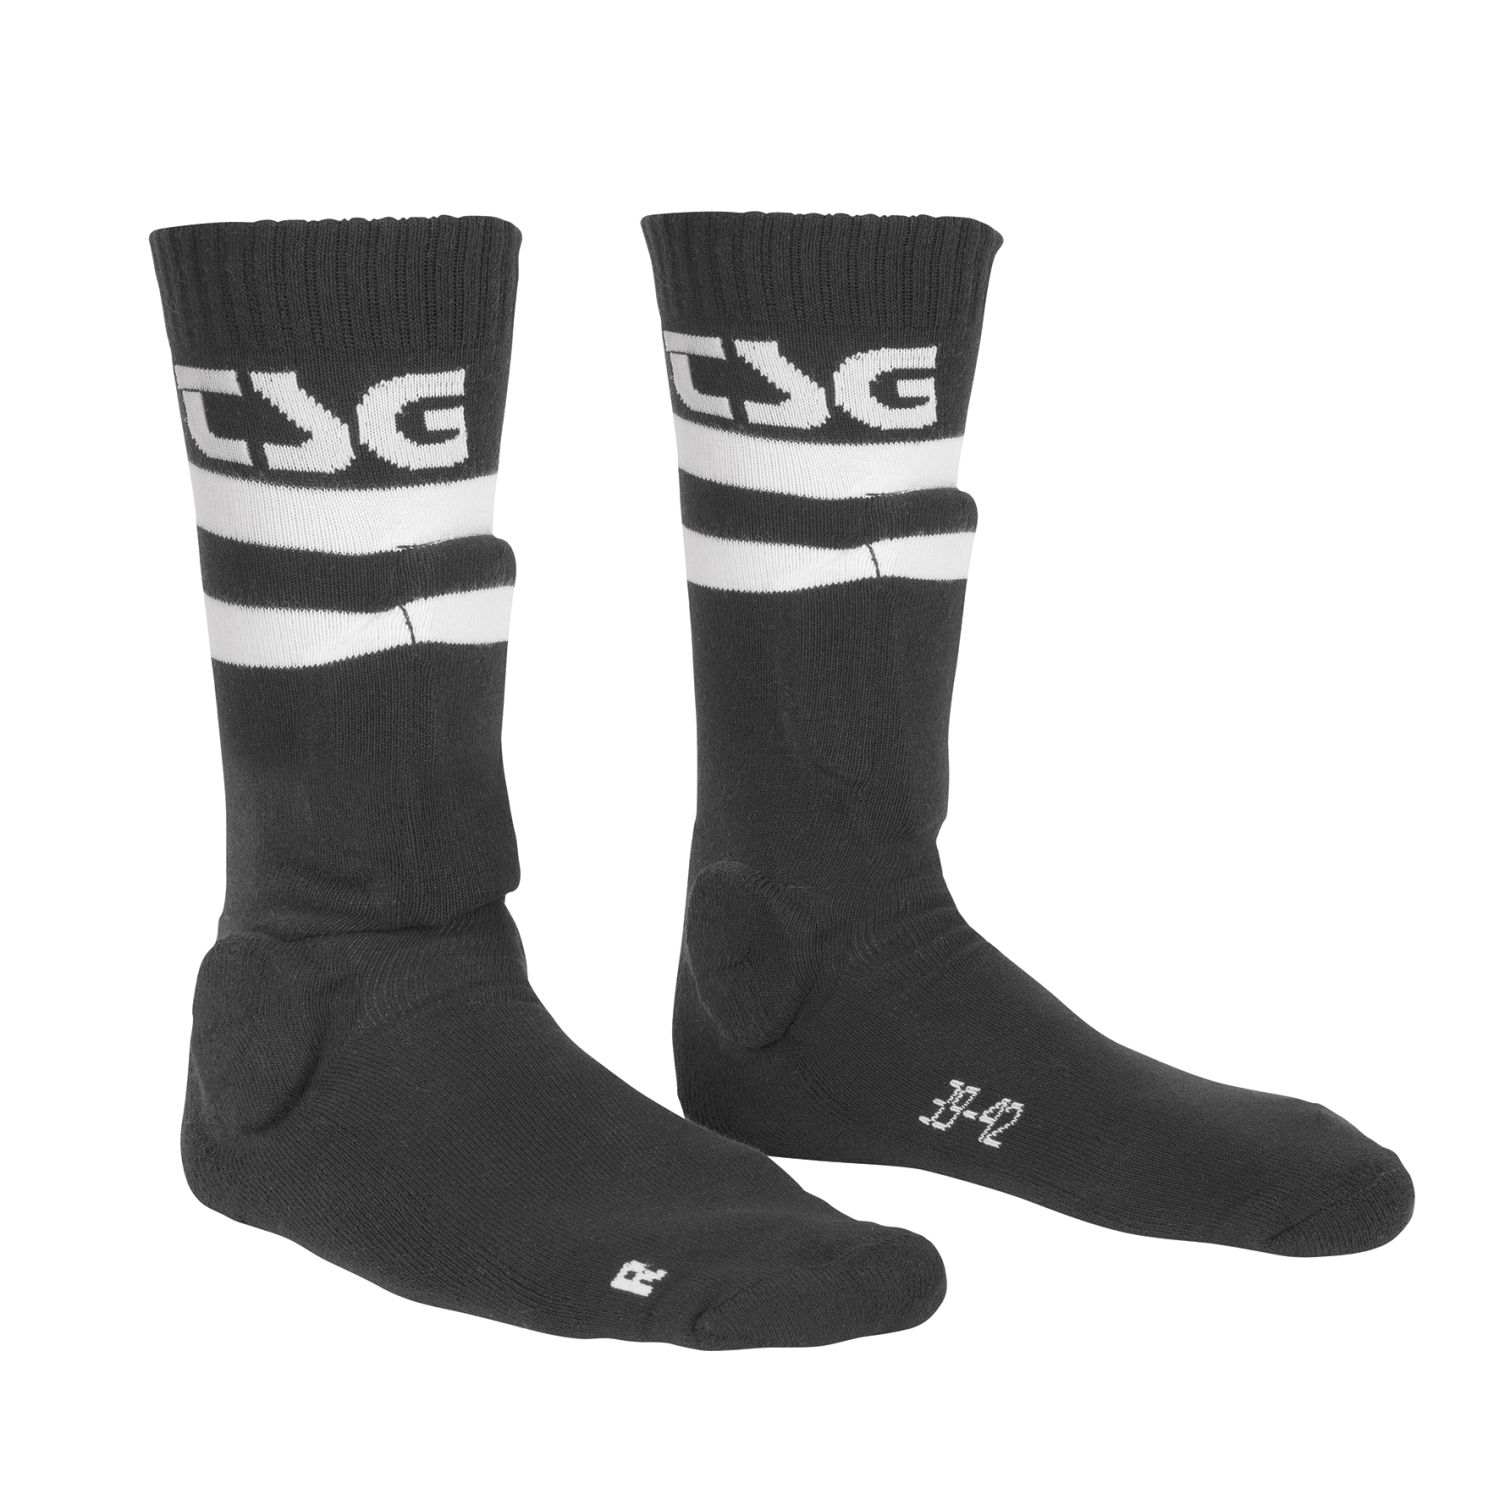 TSG Calze MTB Street Sock Skate Black